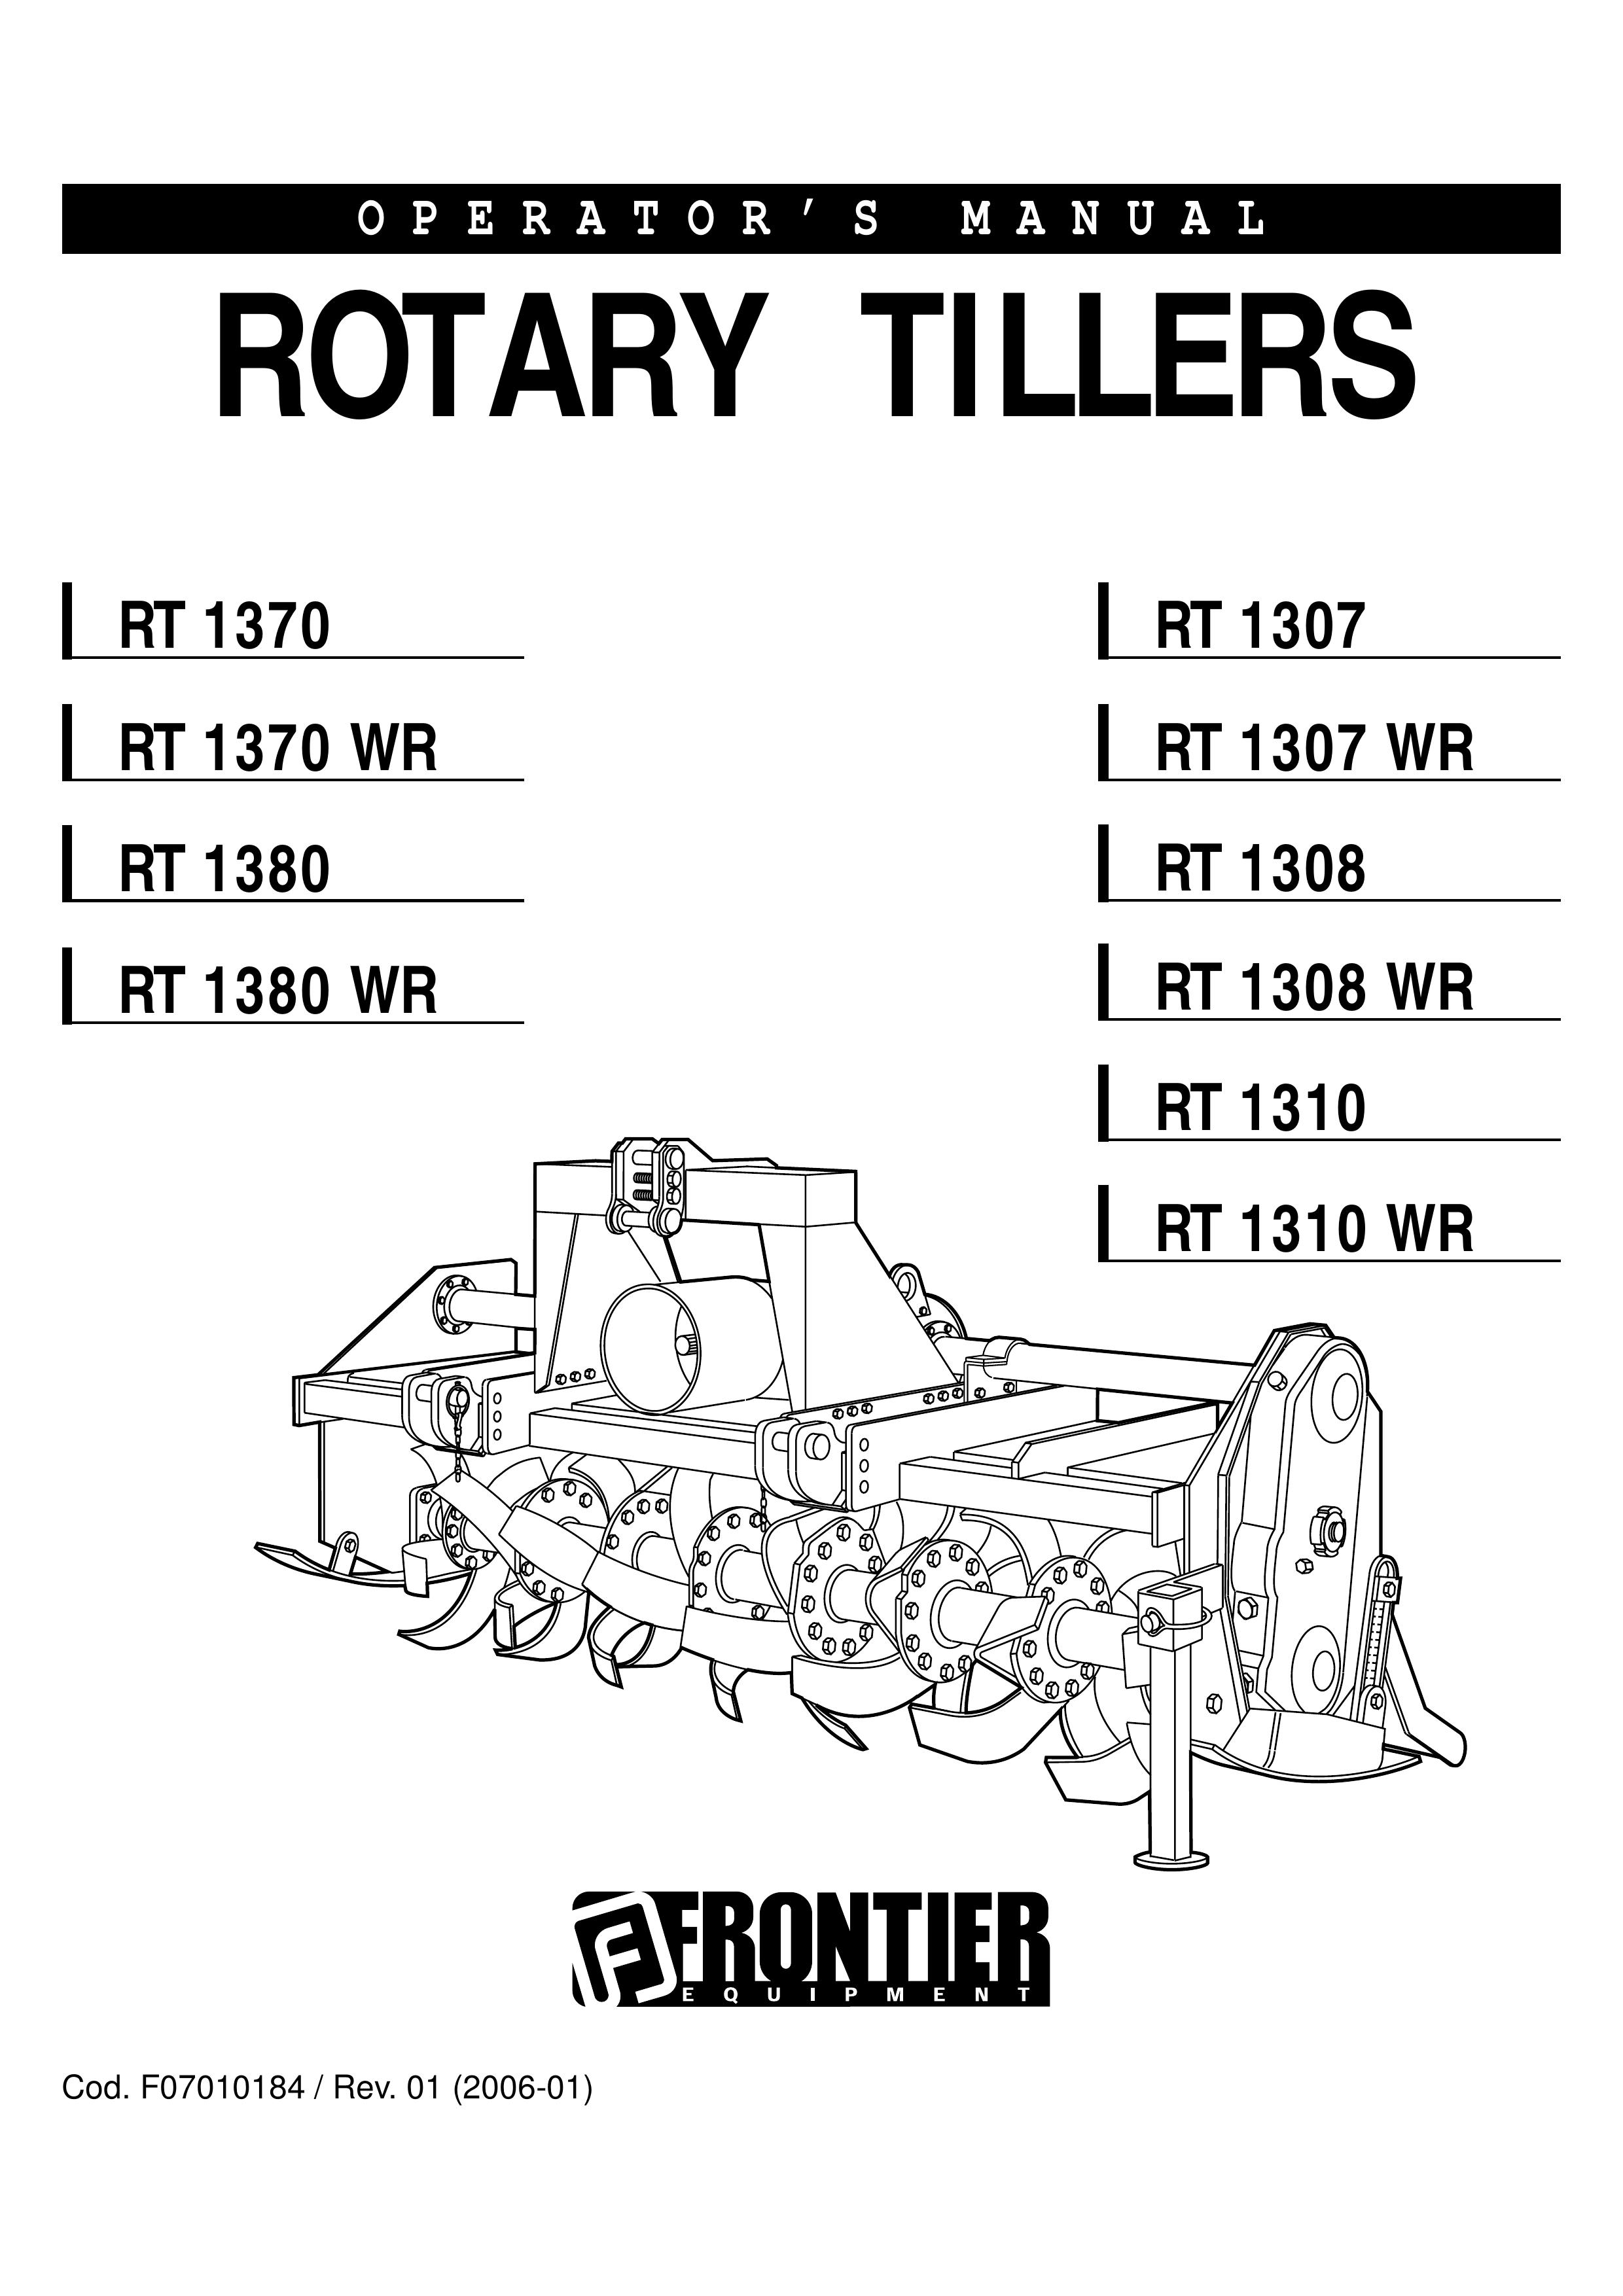 John Deere RT 1307 WR Tiller User Manual